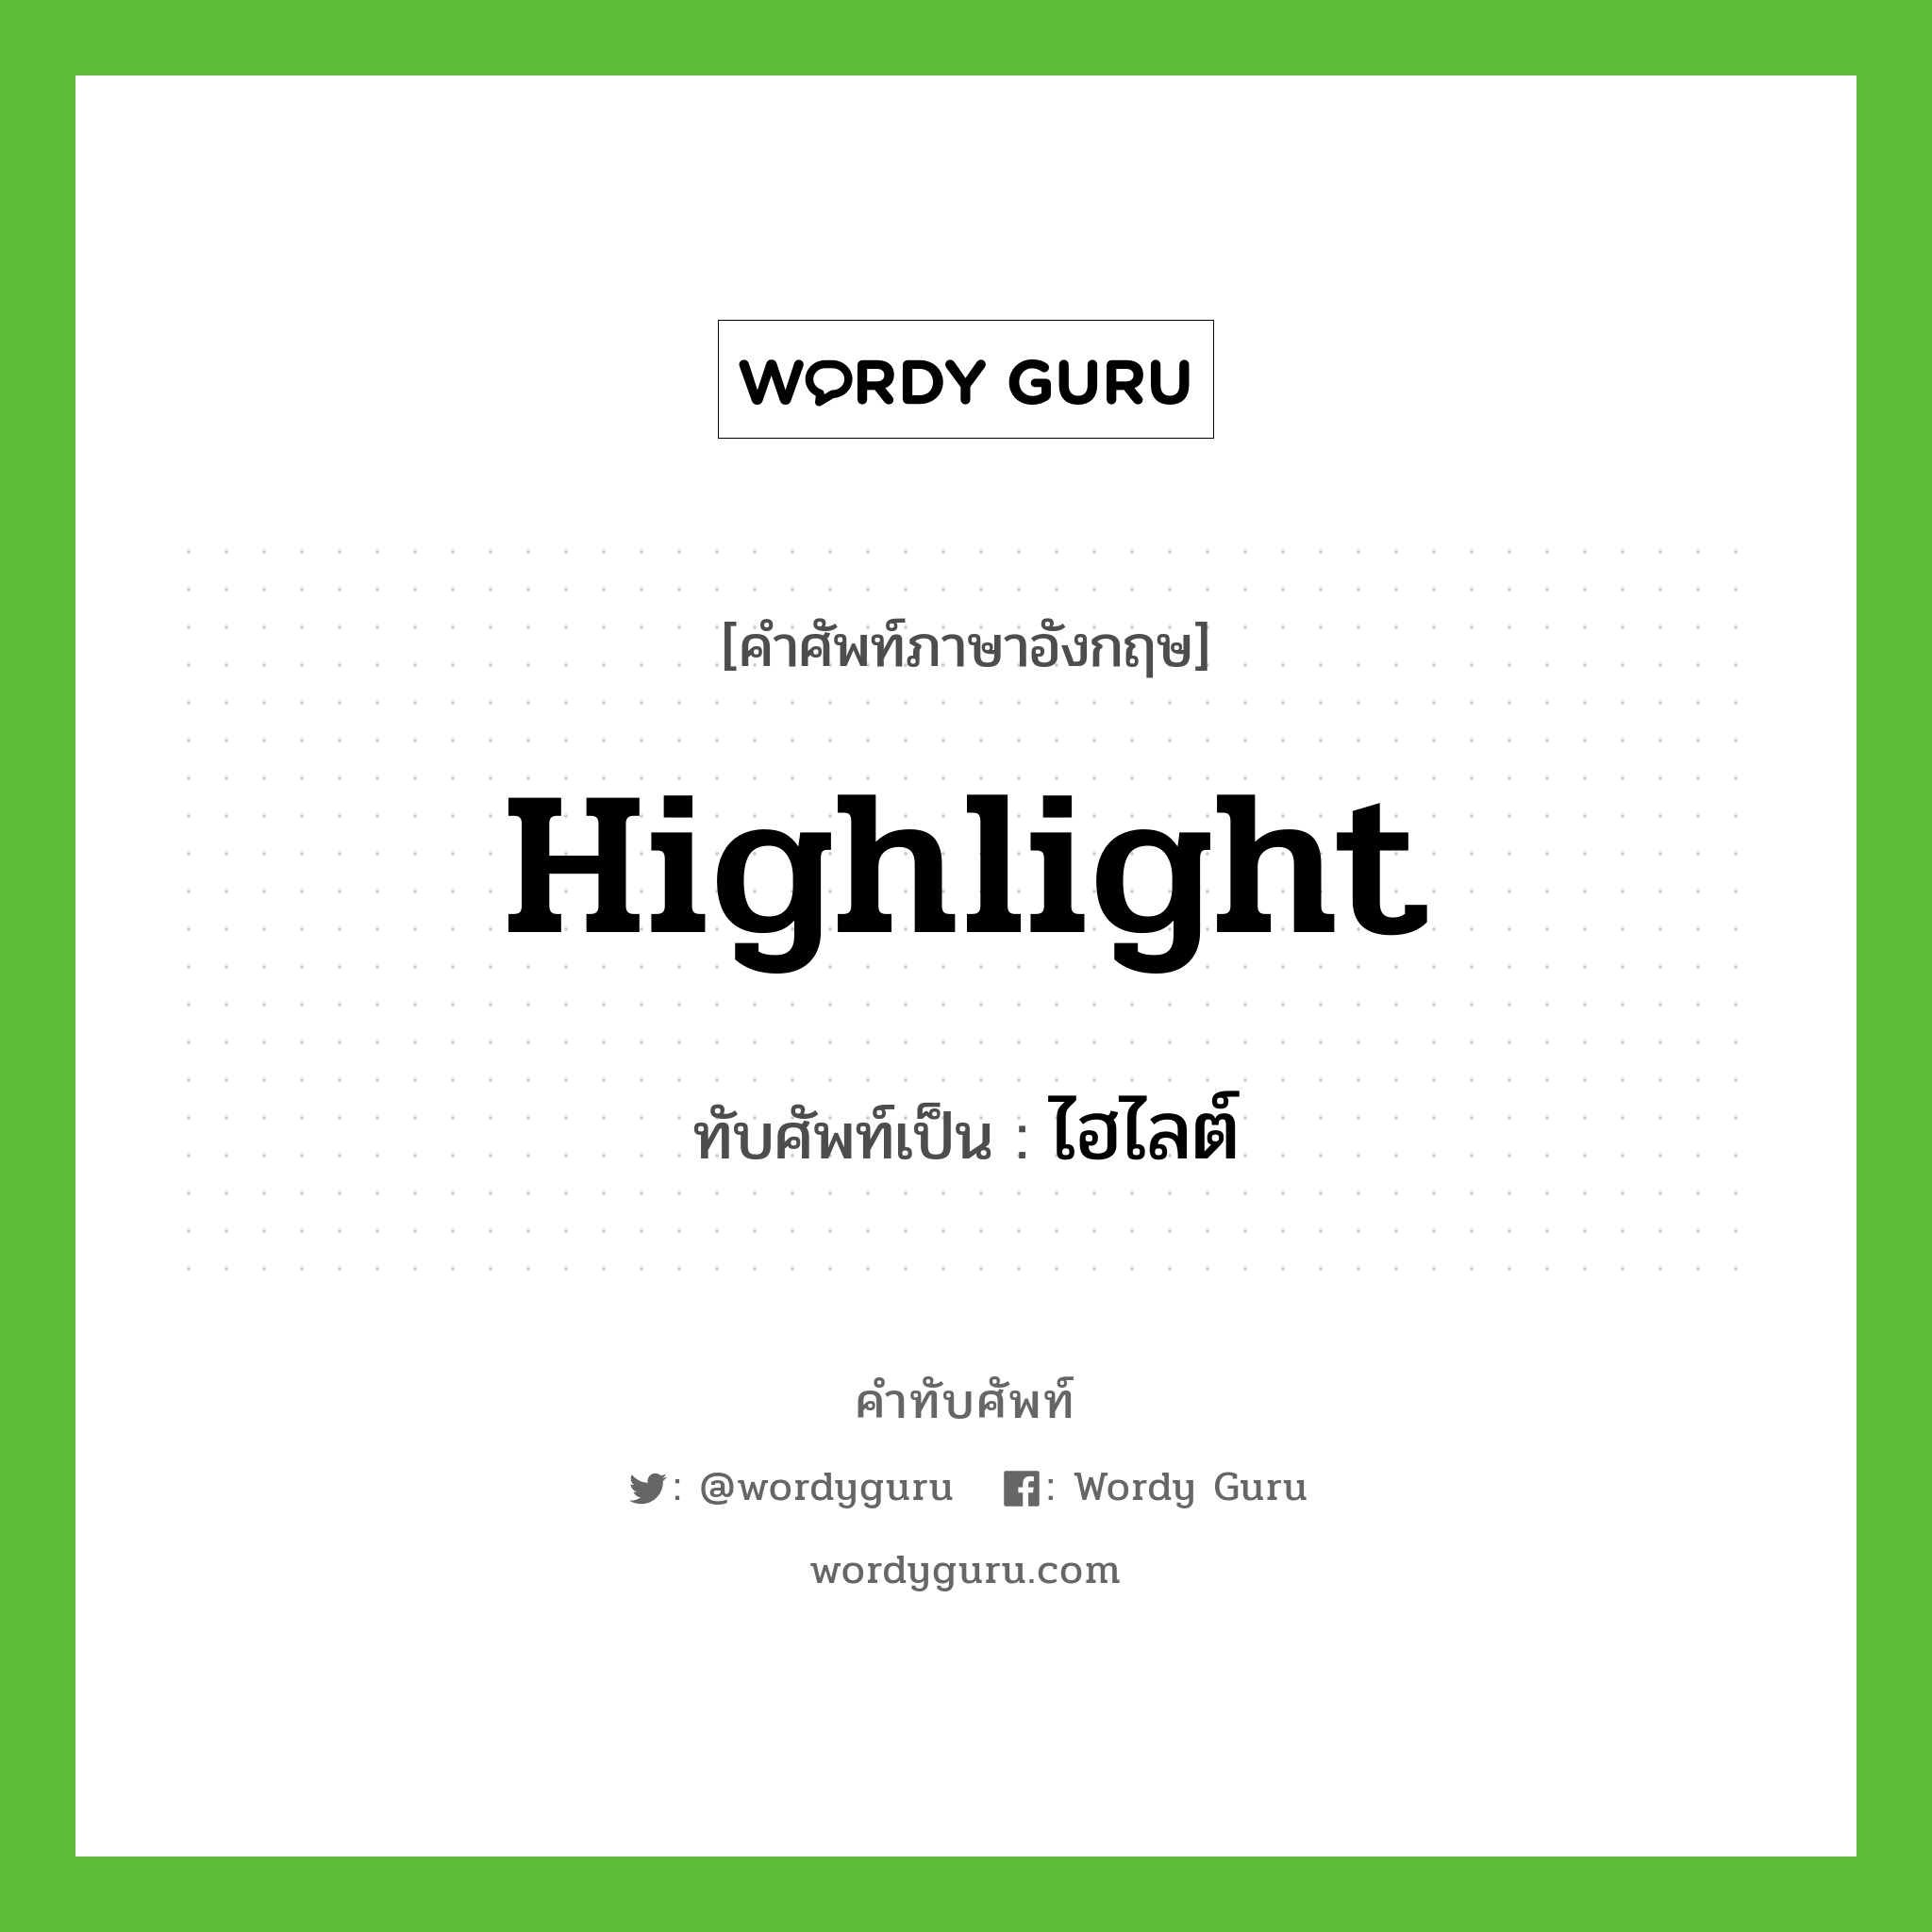 highlight เขียนเป็นคำไทยว่าอะไร?, คำศัพท์ภาษาอังกฤษ highlight ทับศัพท์เป็น ไฮไลต์